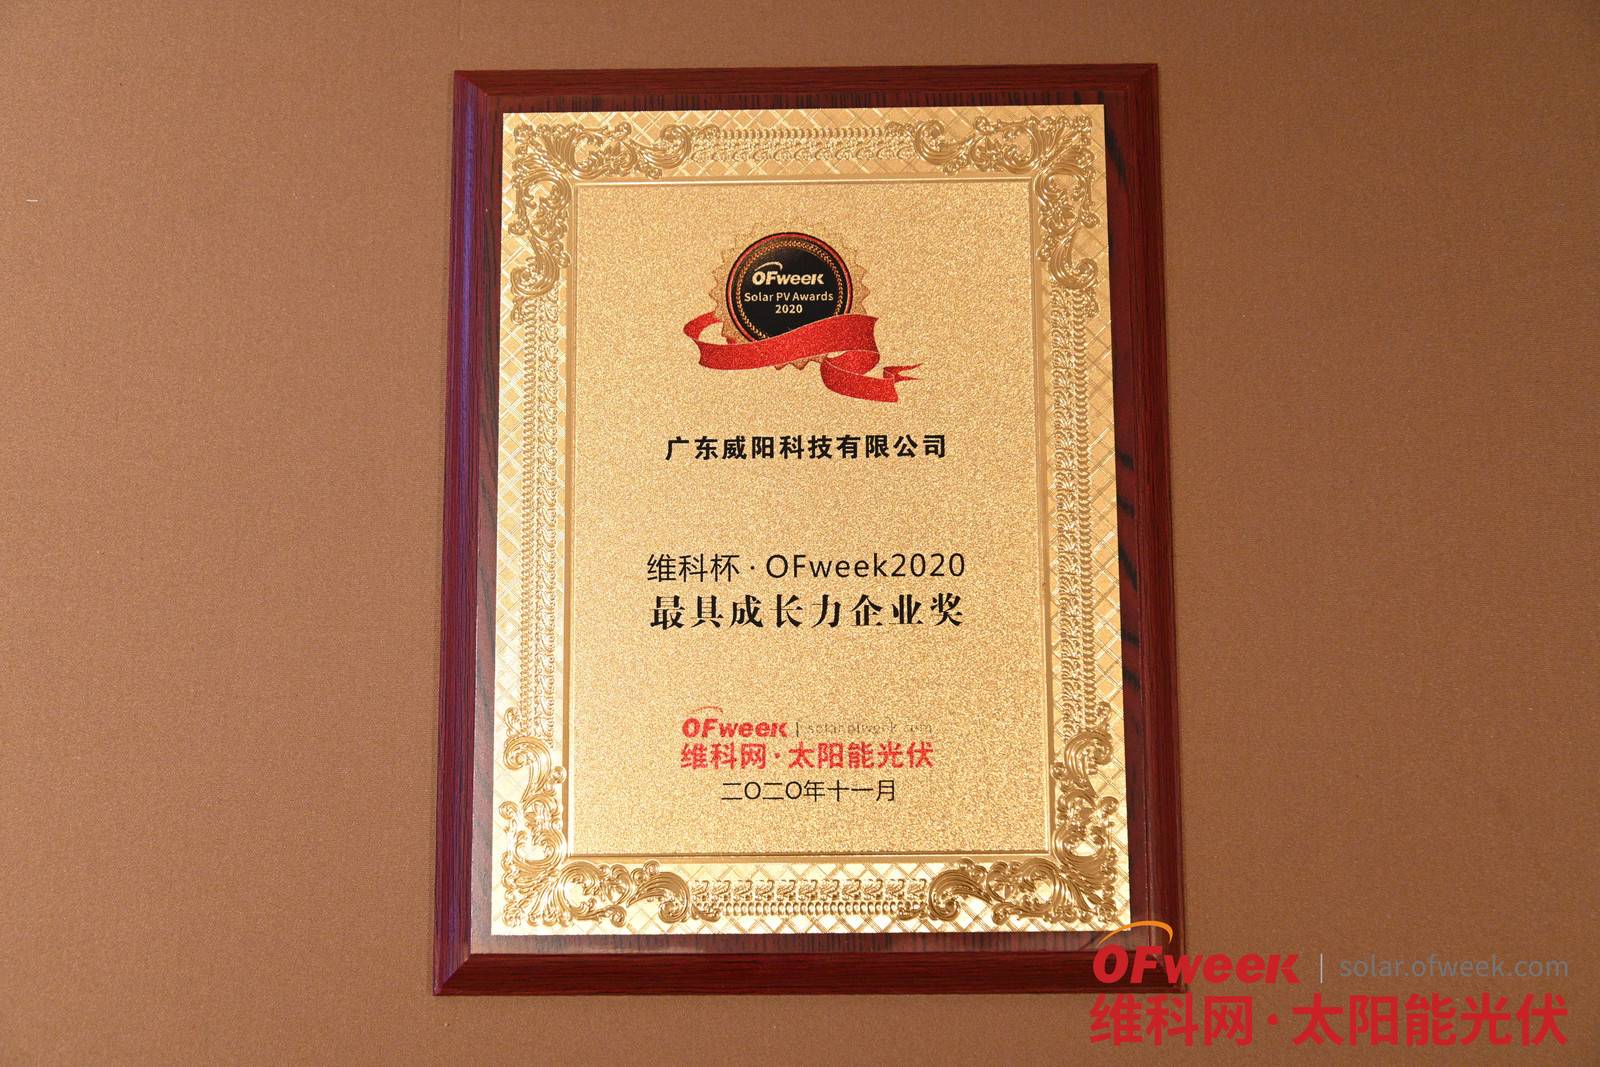 广东威阳科技有限公司荣获维科杯·OFweek 2020最具成长力企业奖